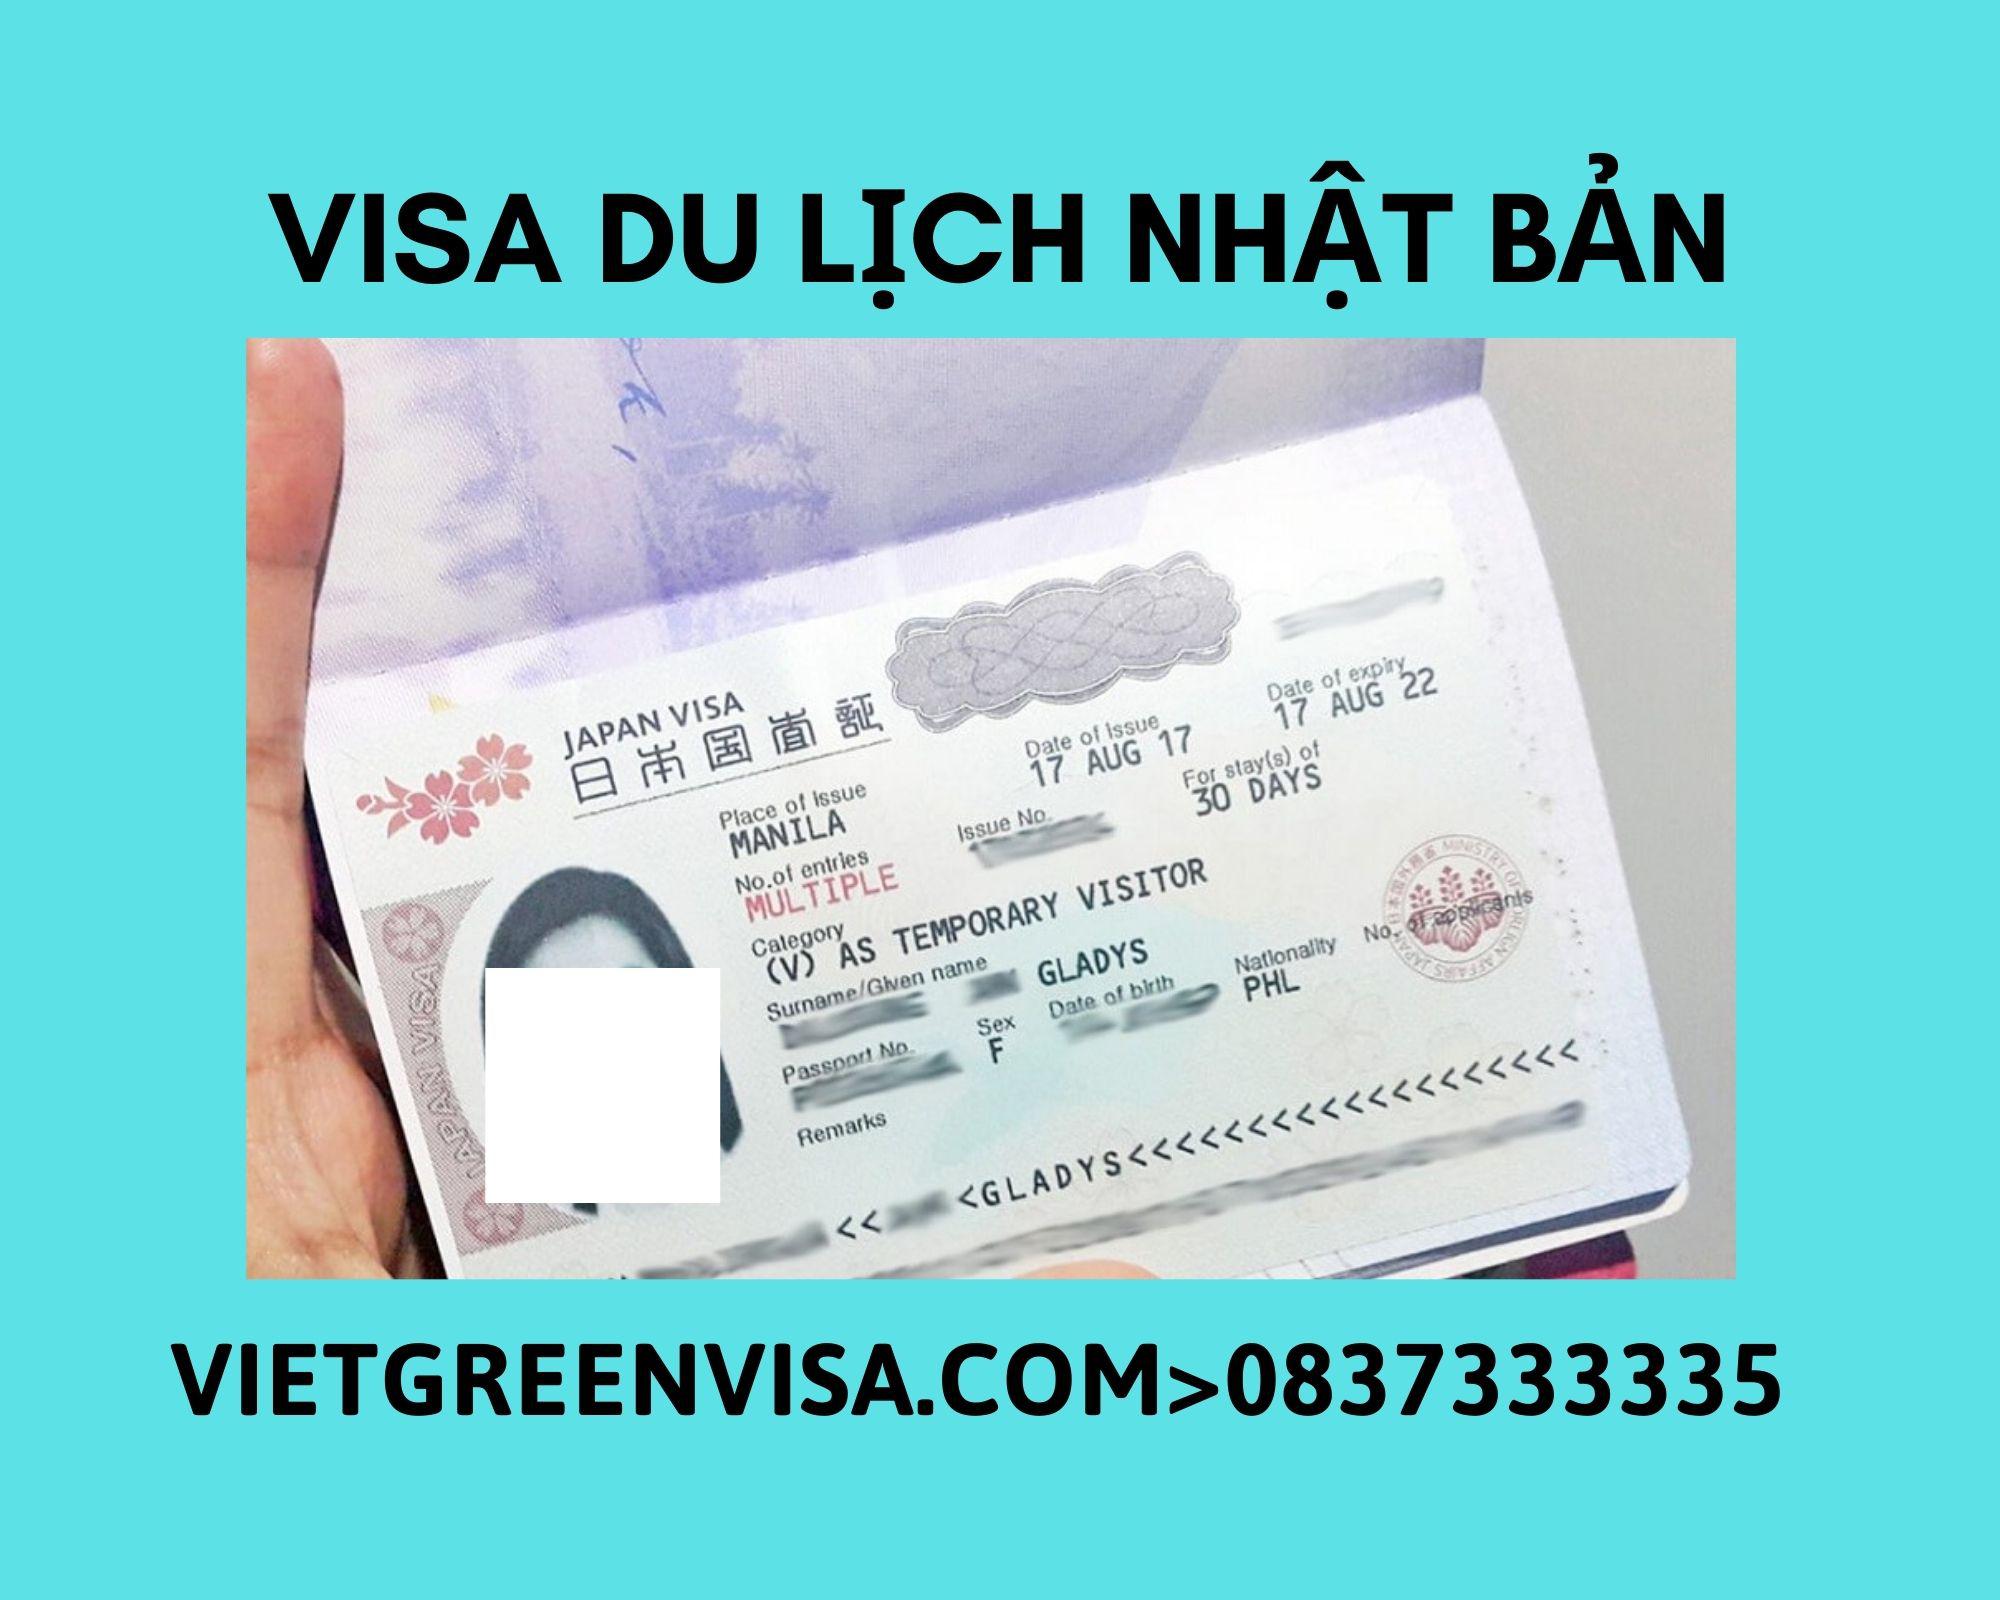 Viet Green Visa, Visa công tác Nhật Bản, Thủ tục xin visa Nhật Bản, Cách tự xin visa Nhật Bản